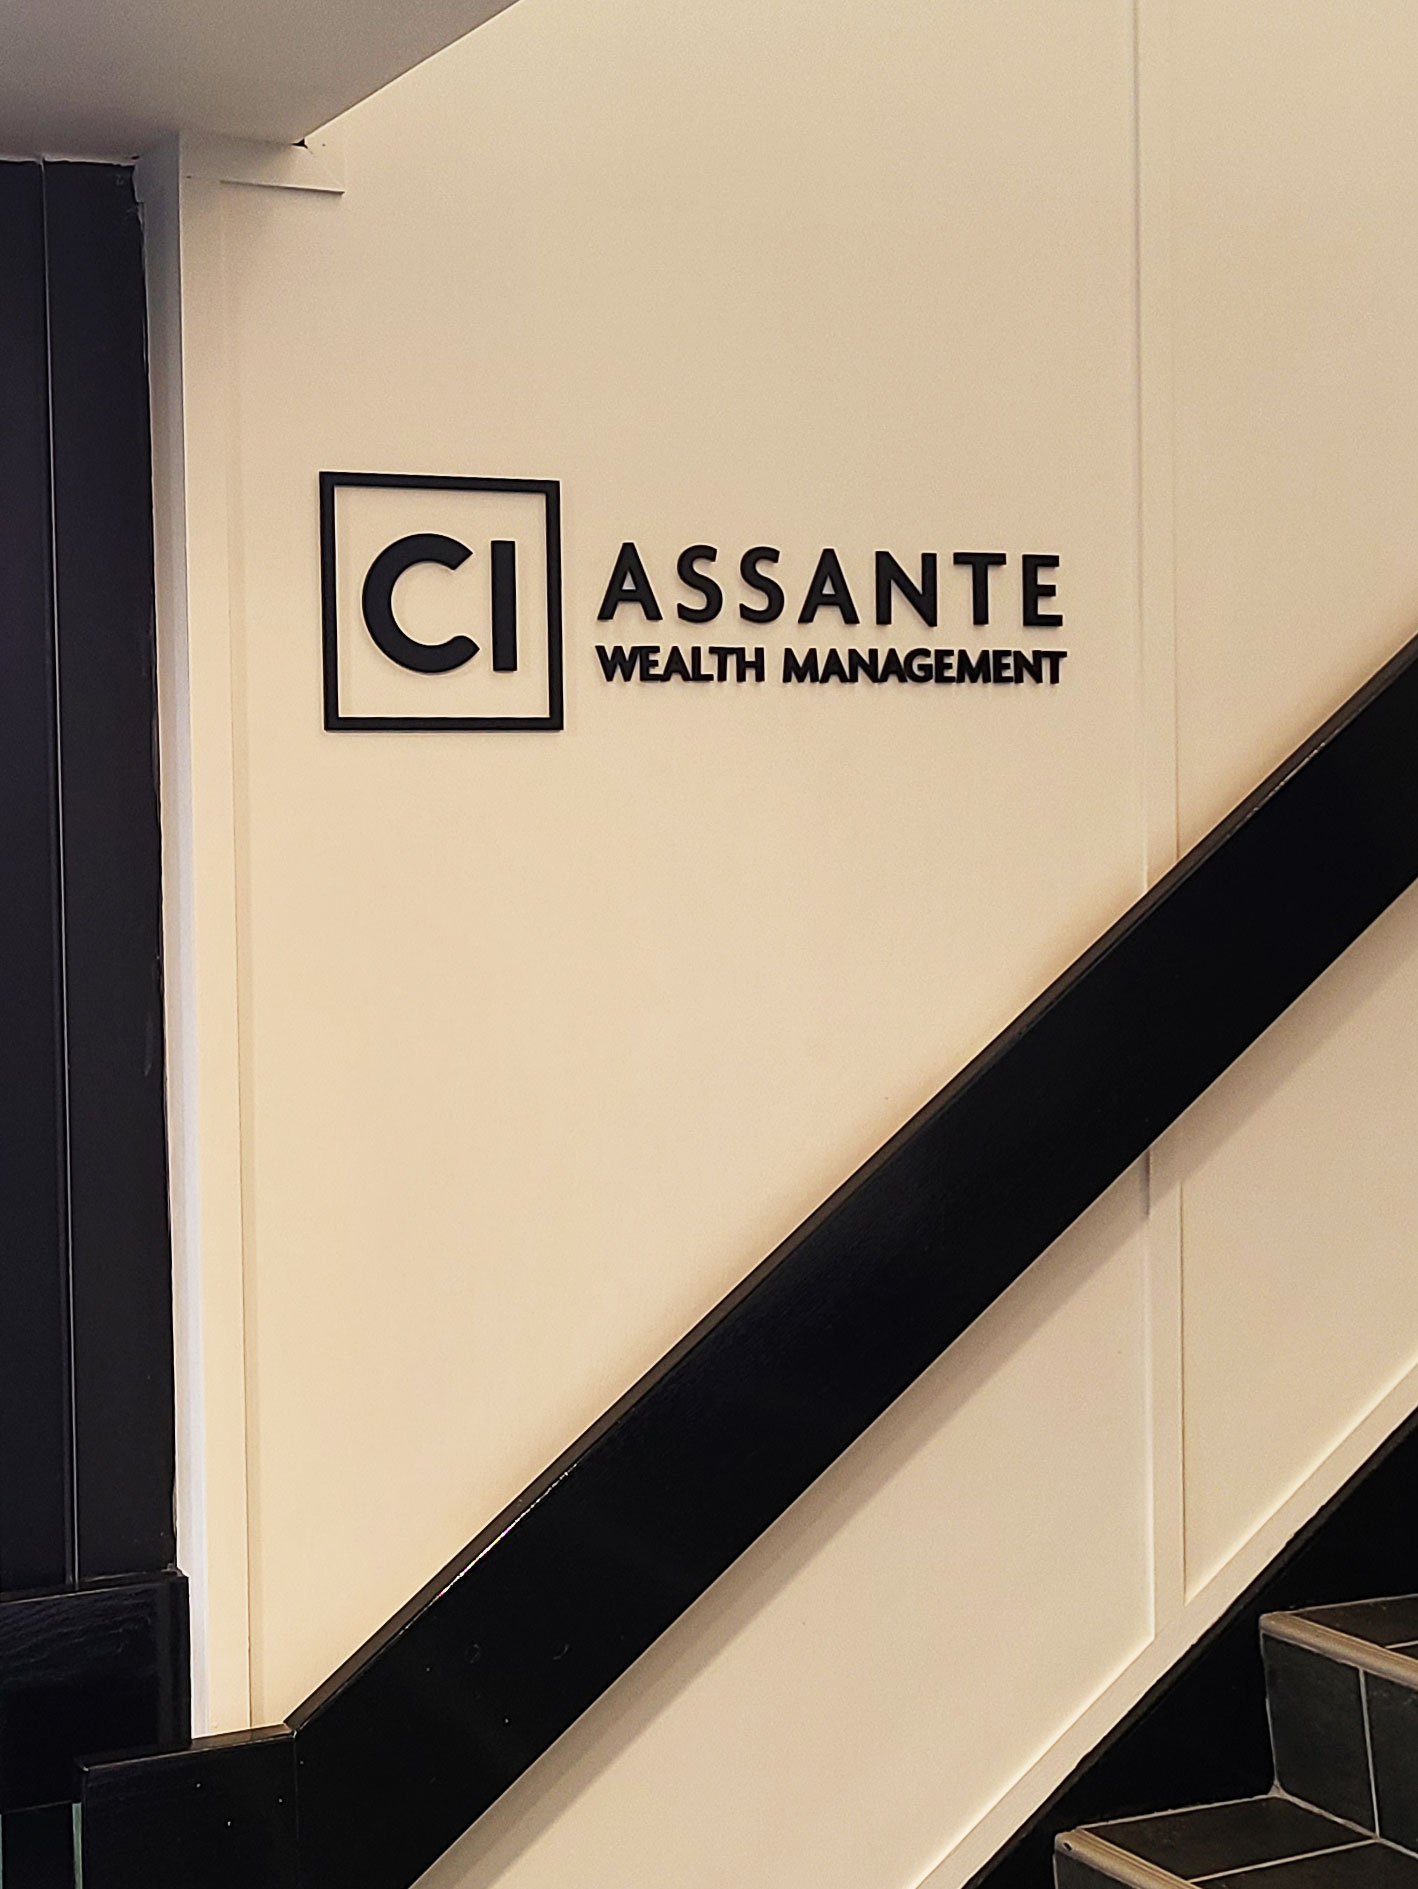 Assante Wealth Management - 3D Lettering